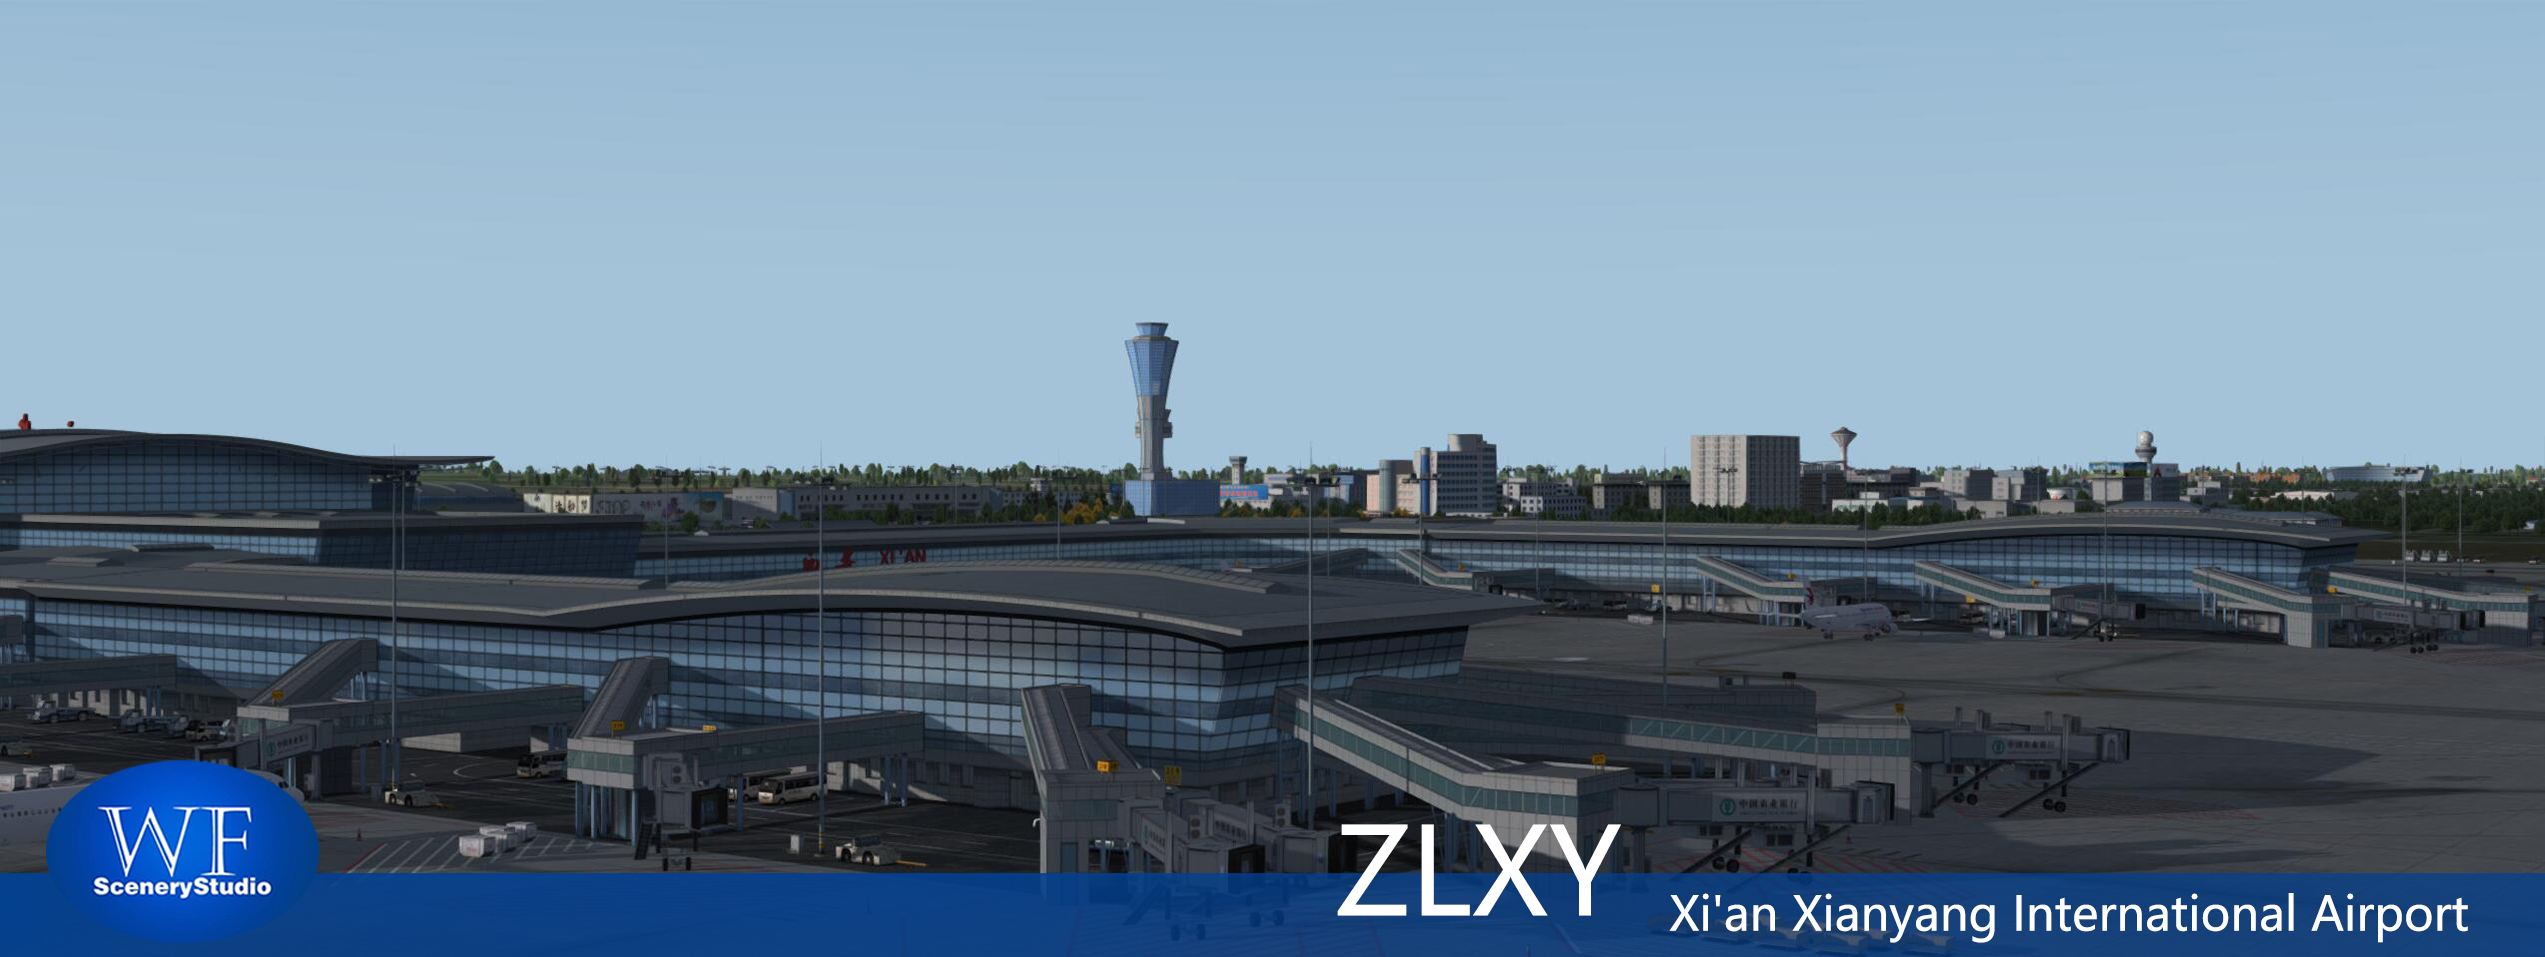 西安咸阳国际机场FSX和P3DV3 版本发布-787 